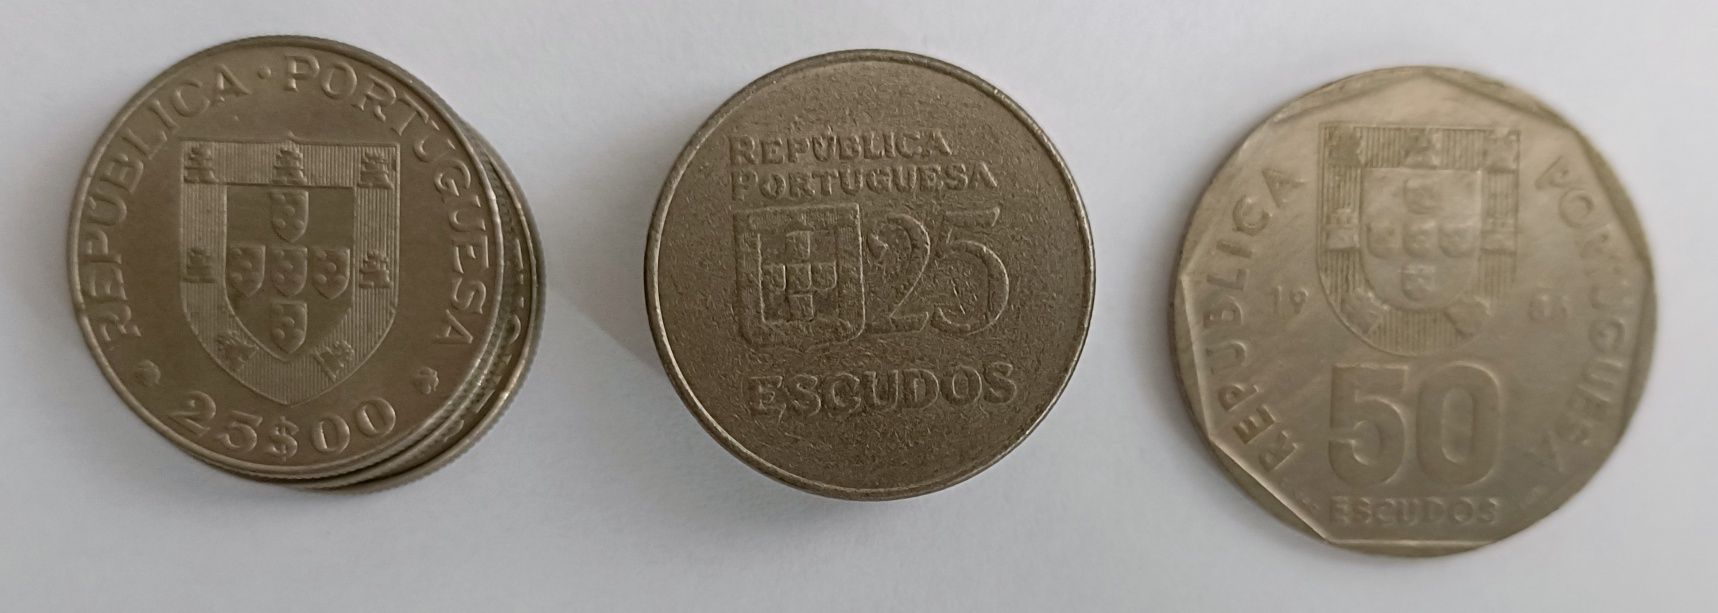 Coleção de Moedas de Portugal. Escudos